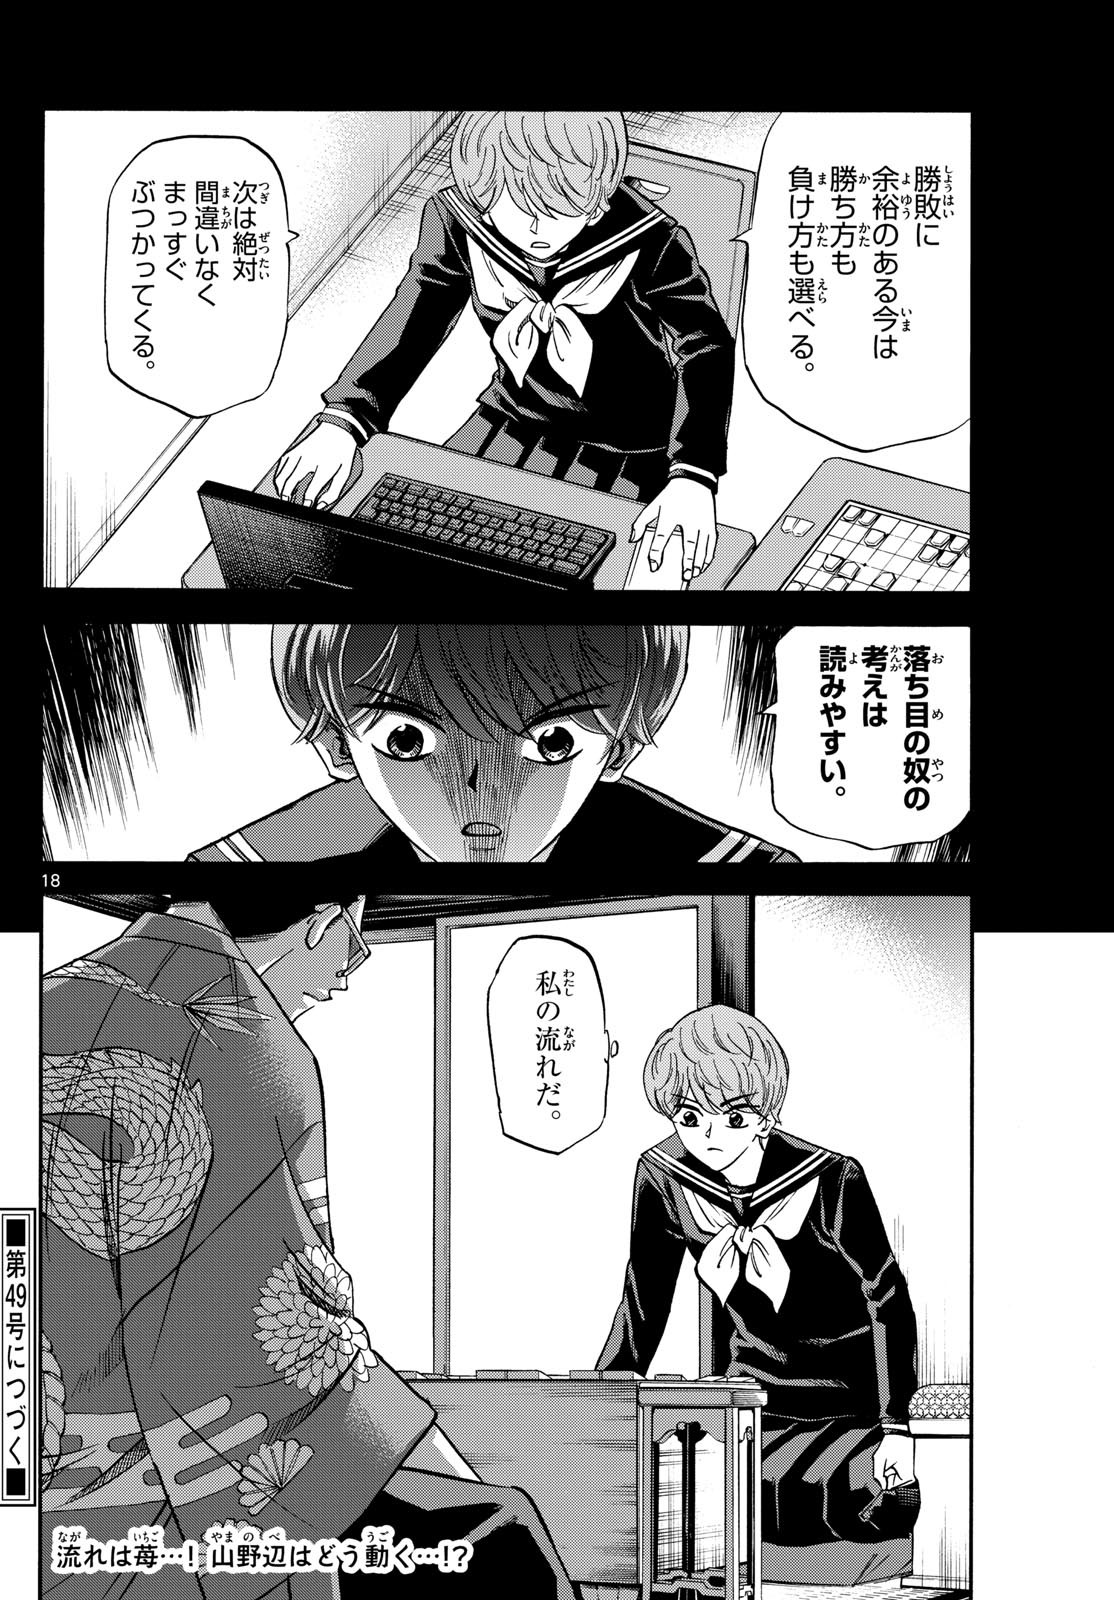 Ryu-to-Ichigo - Chapter 165 - Page 18